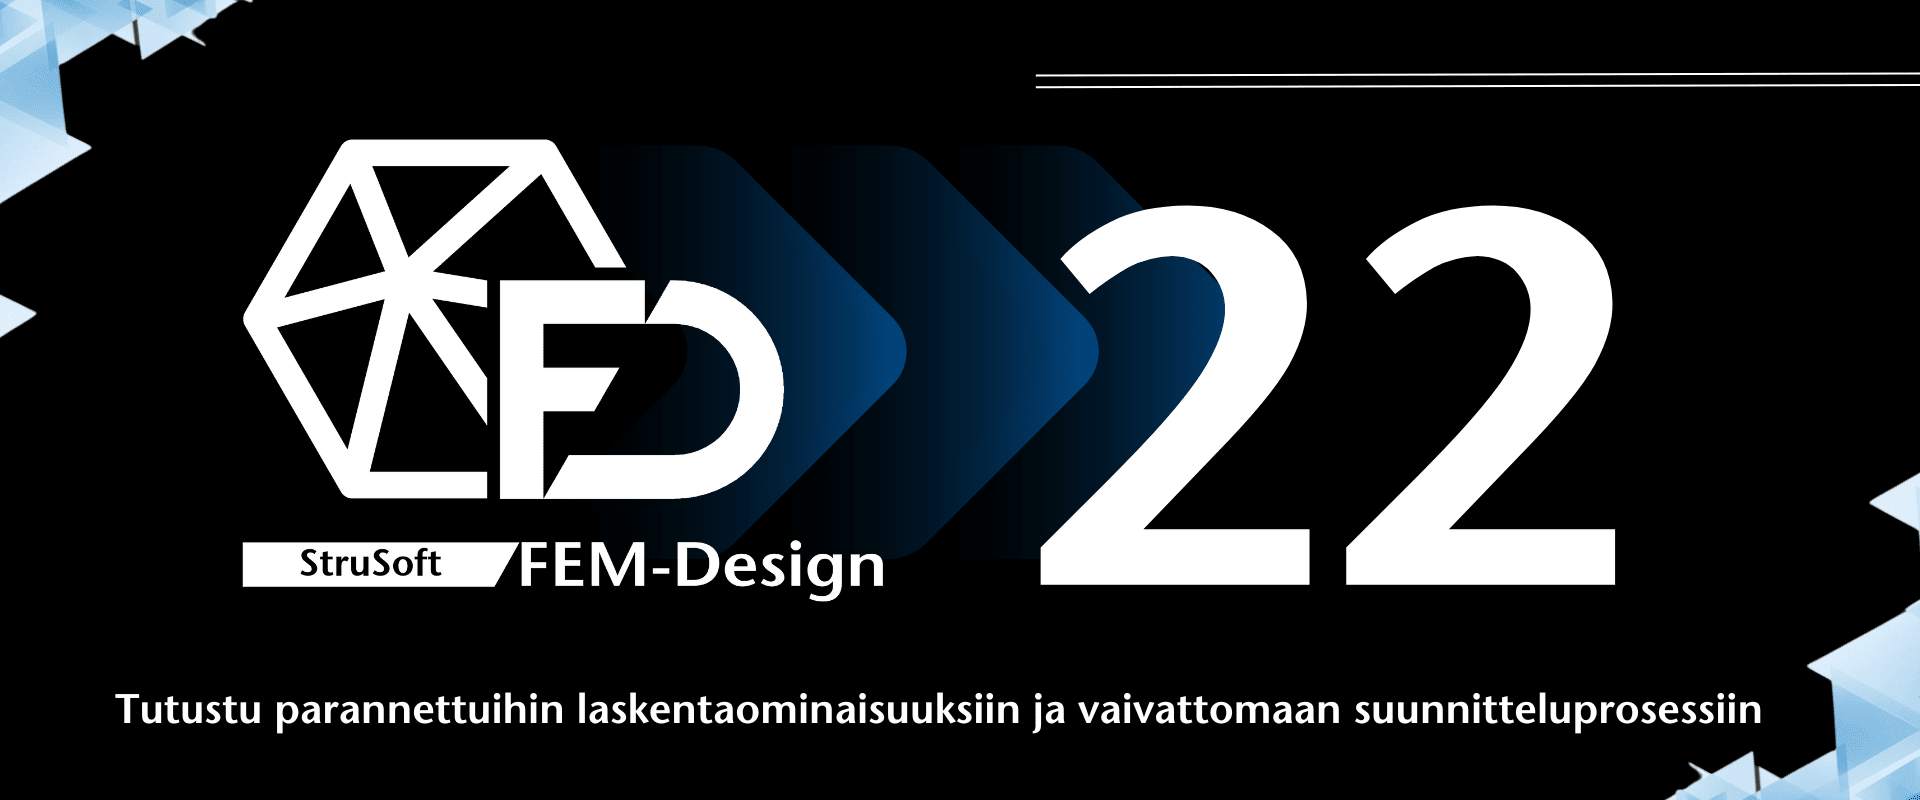 FEM-Design 22 on julkaistu – Tutustu parannettuihin laskentaominaisuuksiin ja vaivattomaan suunnitteluprosessiin